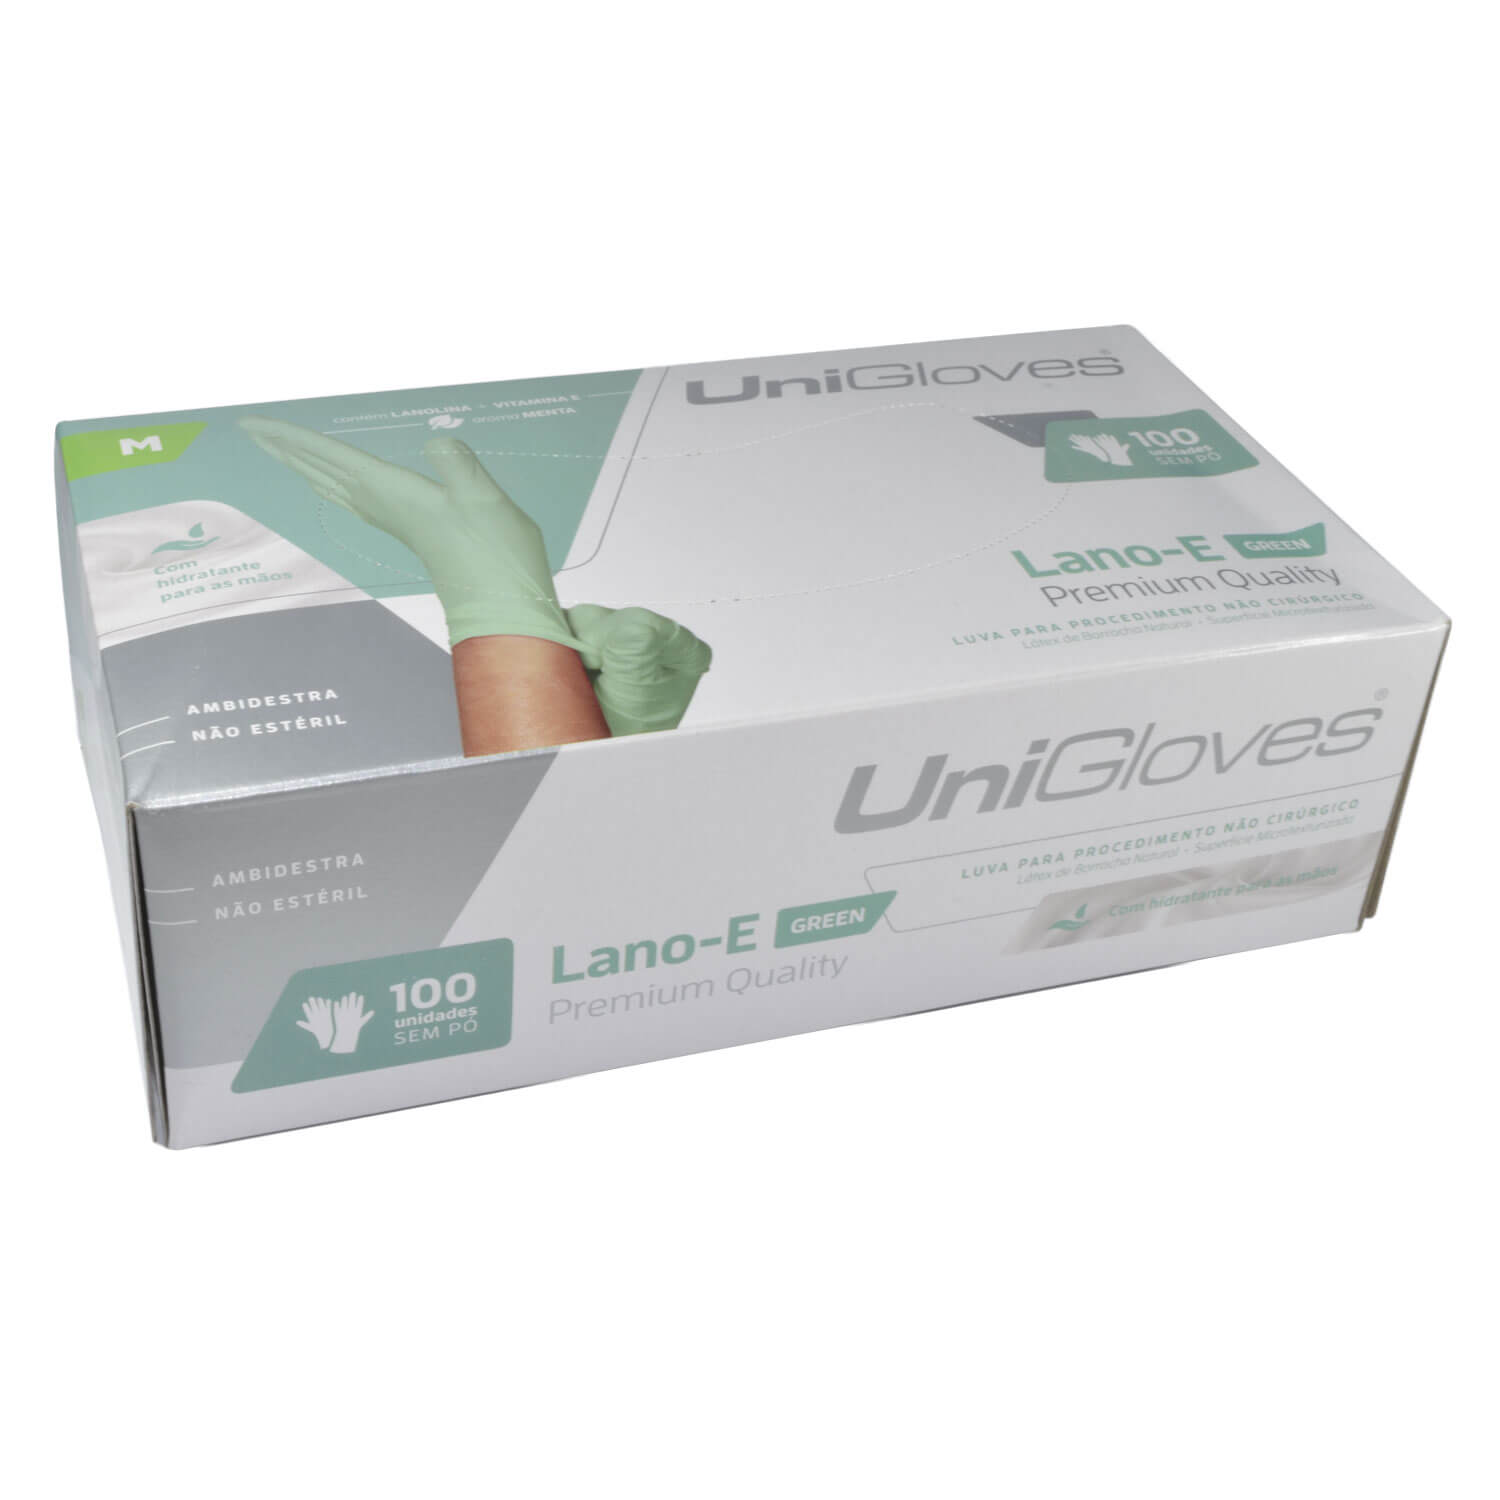 Luva Unigloves Latex Lano-E Green